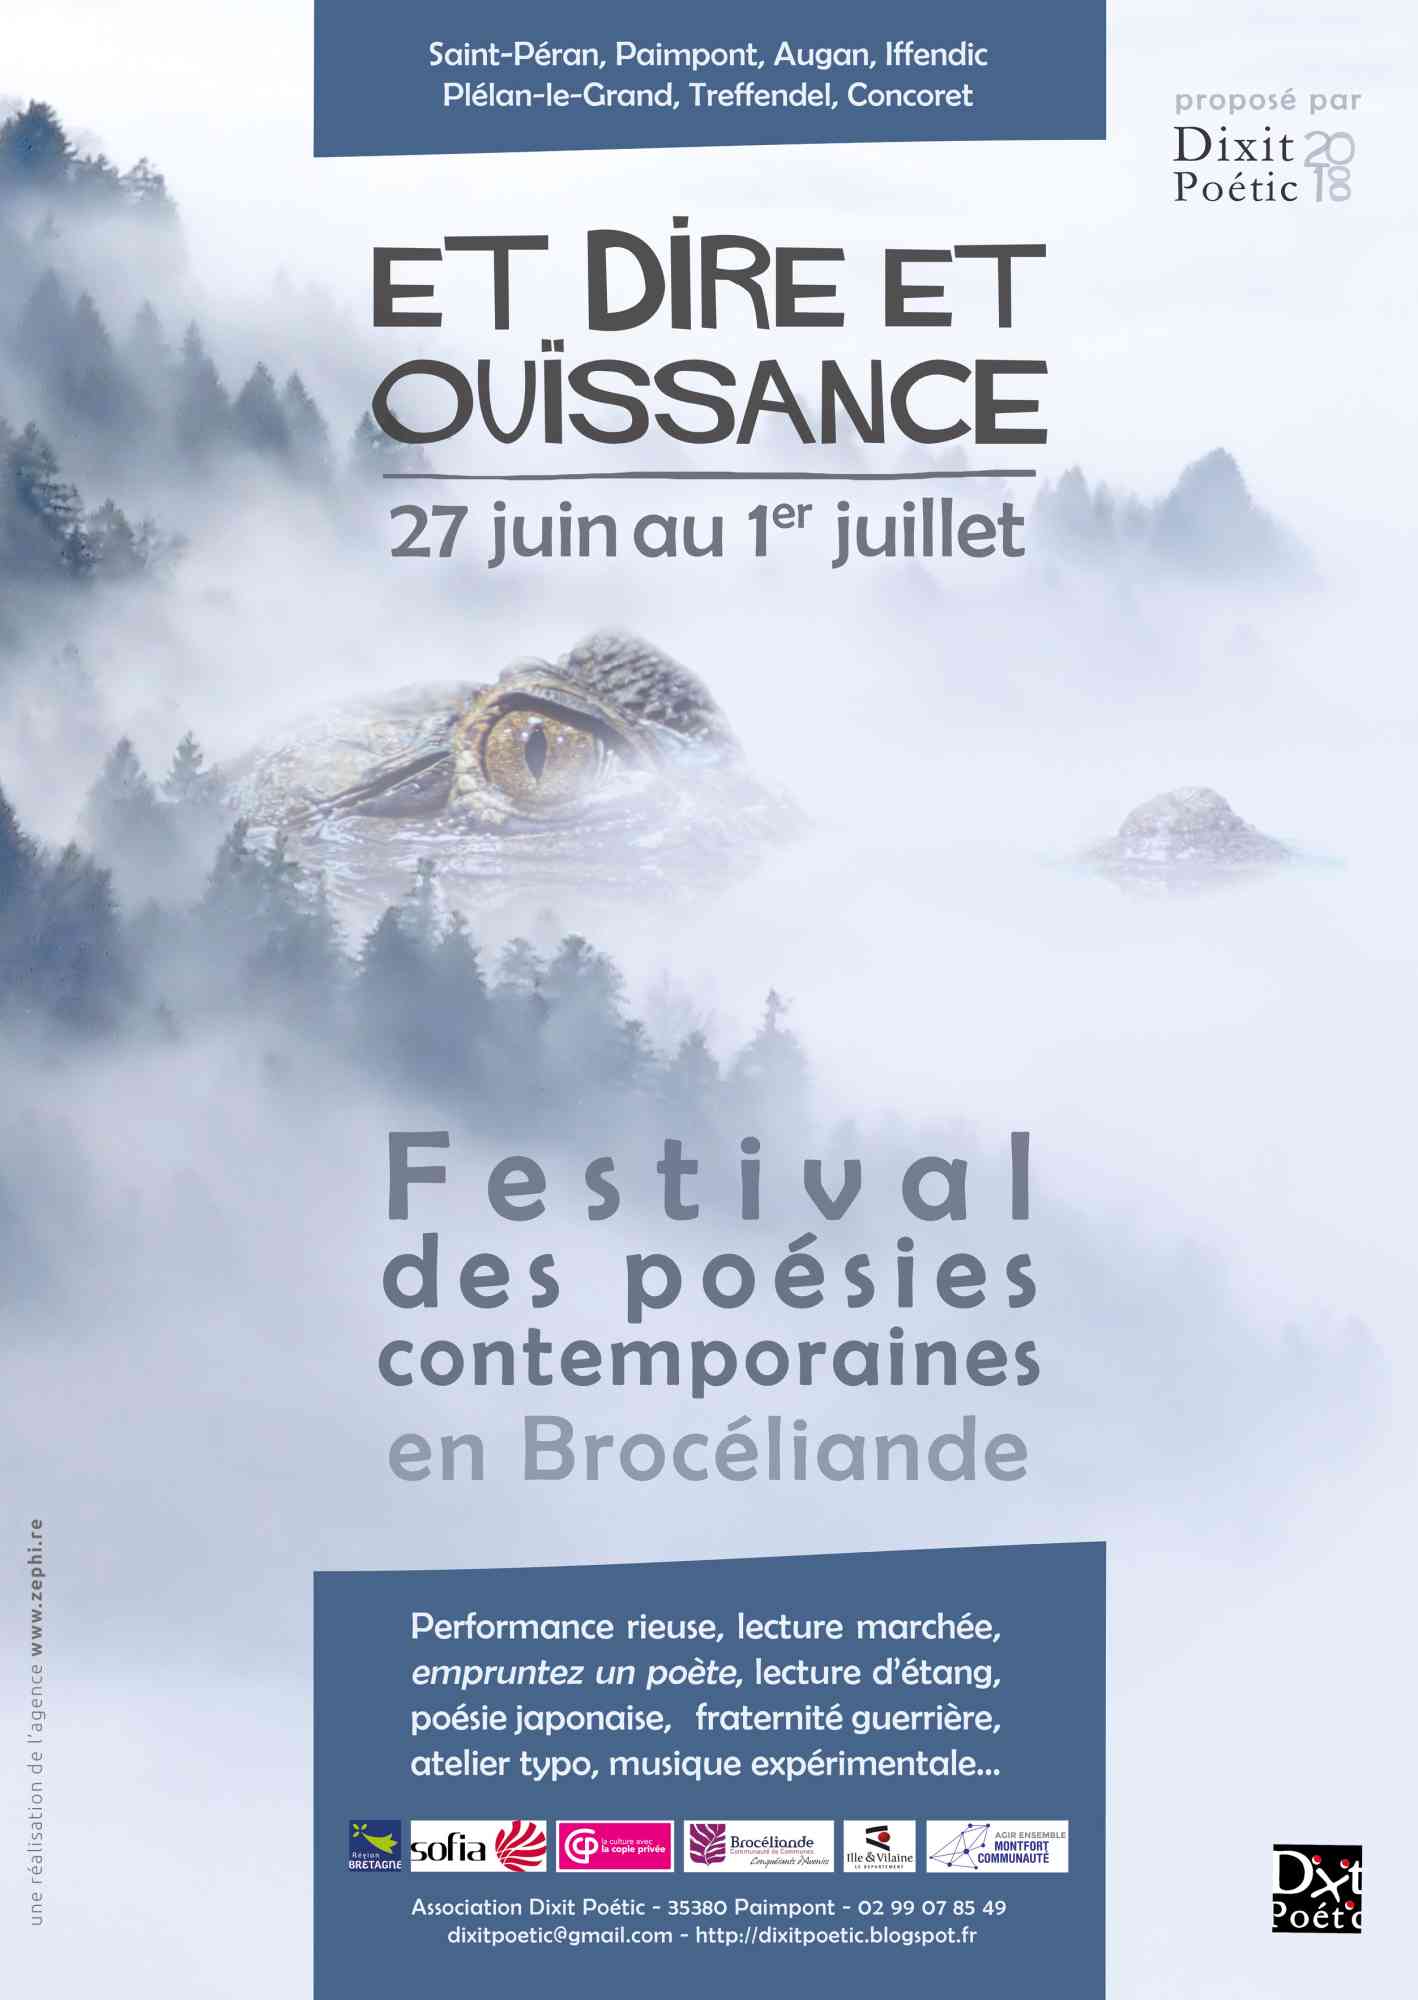 Et Dire Et Ouissance Festival Des Poesies Contemporaines Office De Tourisme De Broceliande